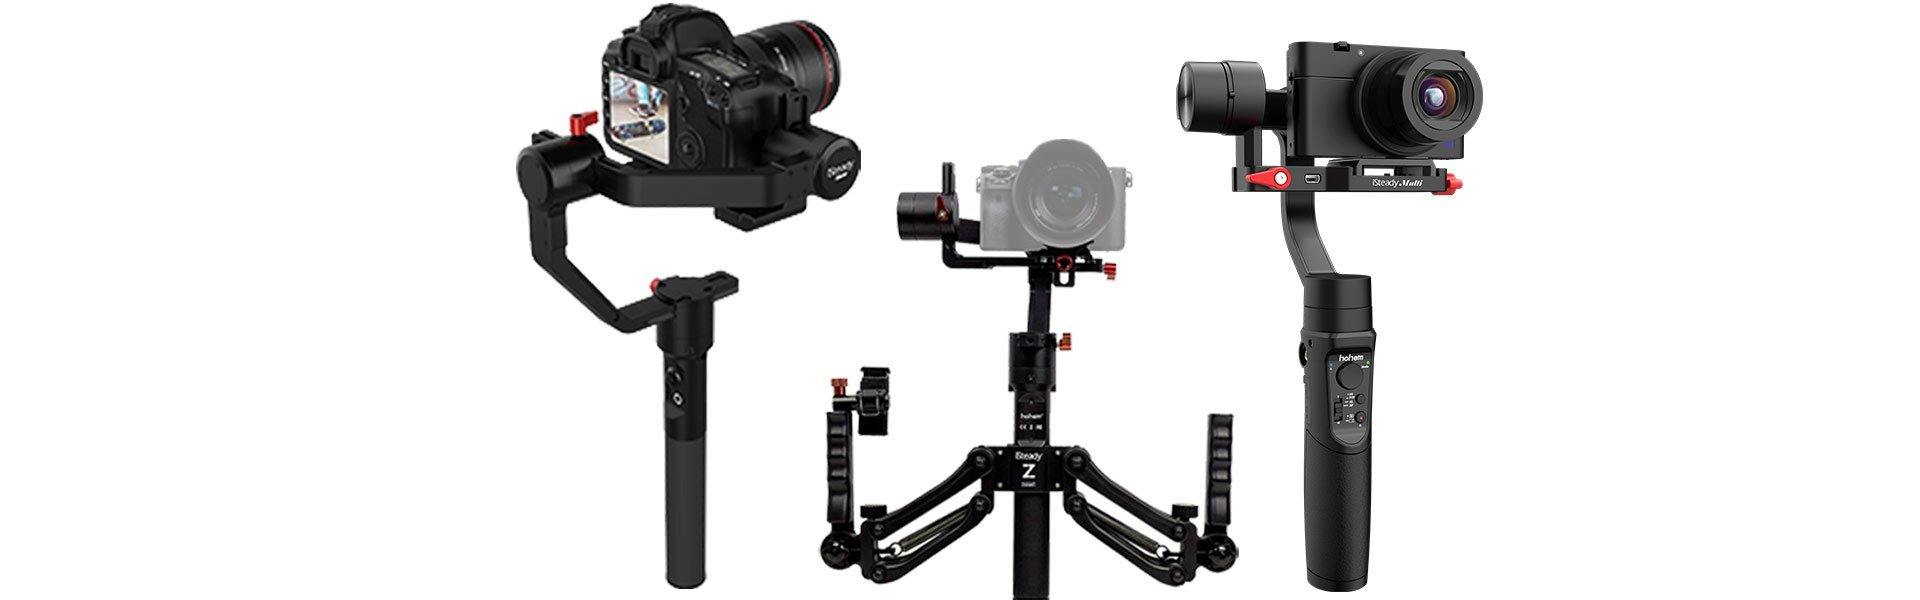 Stabilizer for Cameras store.hohem.com